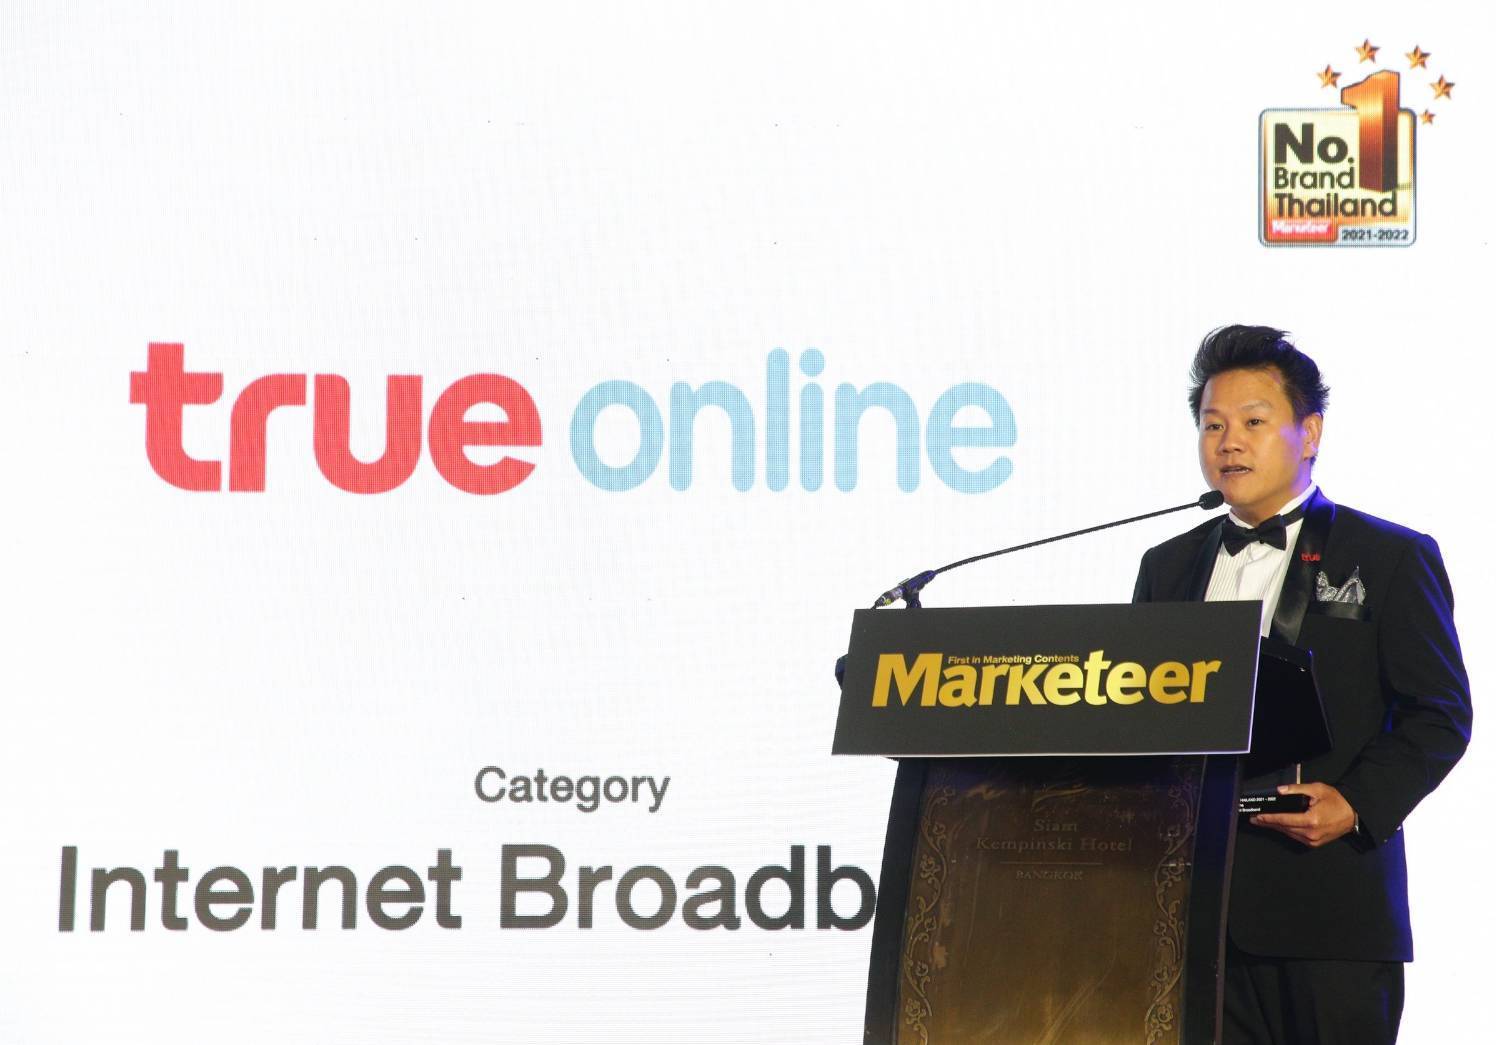 ทรูออนไลน์คว้ารางวัล Marketeer No.1 Brand Thailand 8 ปีซ้อน พร้อมก้าวสู่ผู้นำสมาร์ทโฮมเจ้าเดียว ครบครันกว่าด้วยคอนเทนต์หลากหลายระดับโลกและการบริการด้วย AI 24 ชั่วโมง